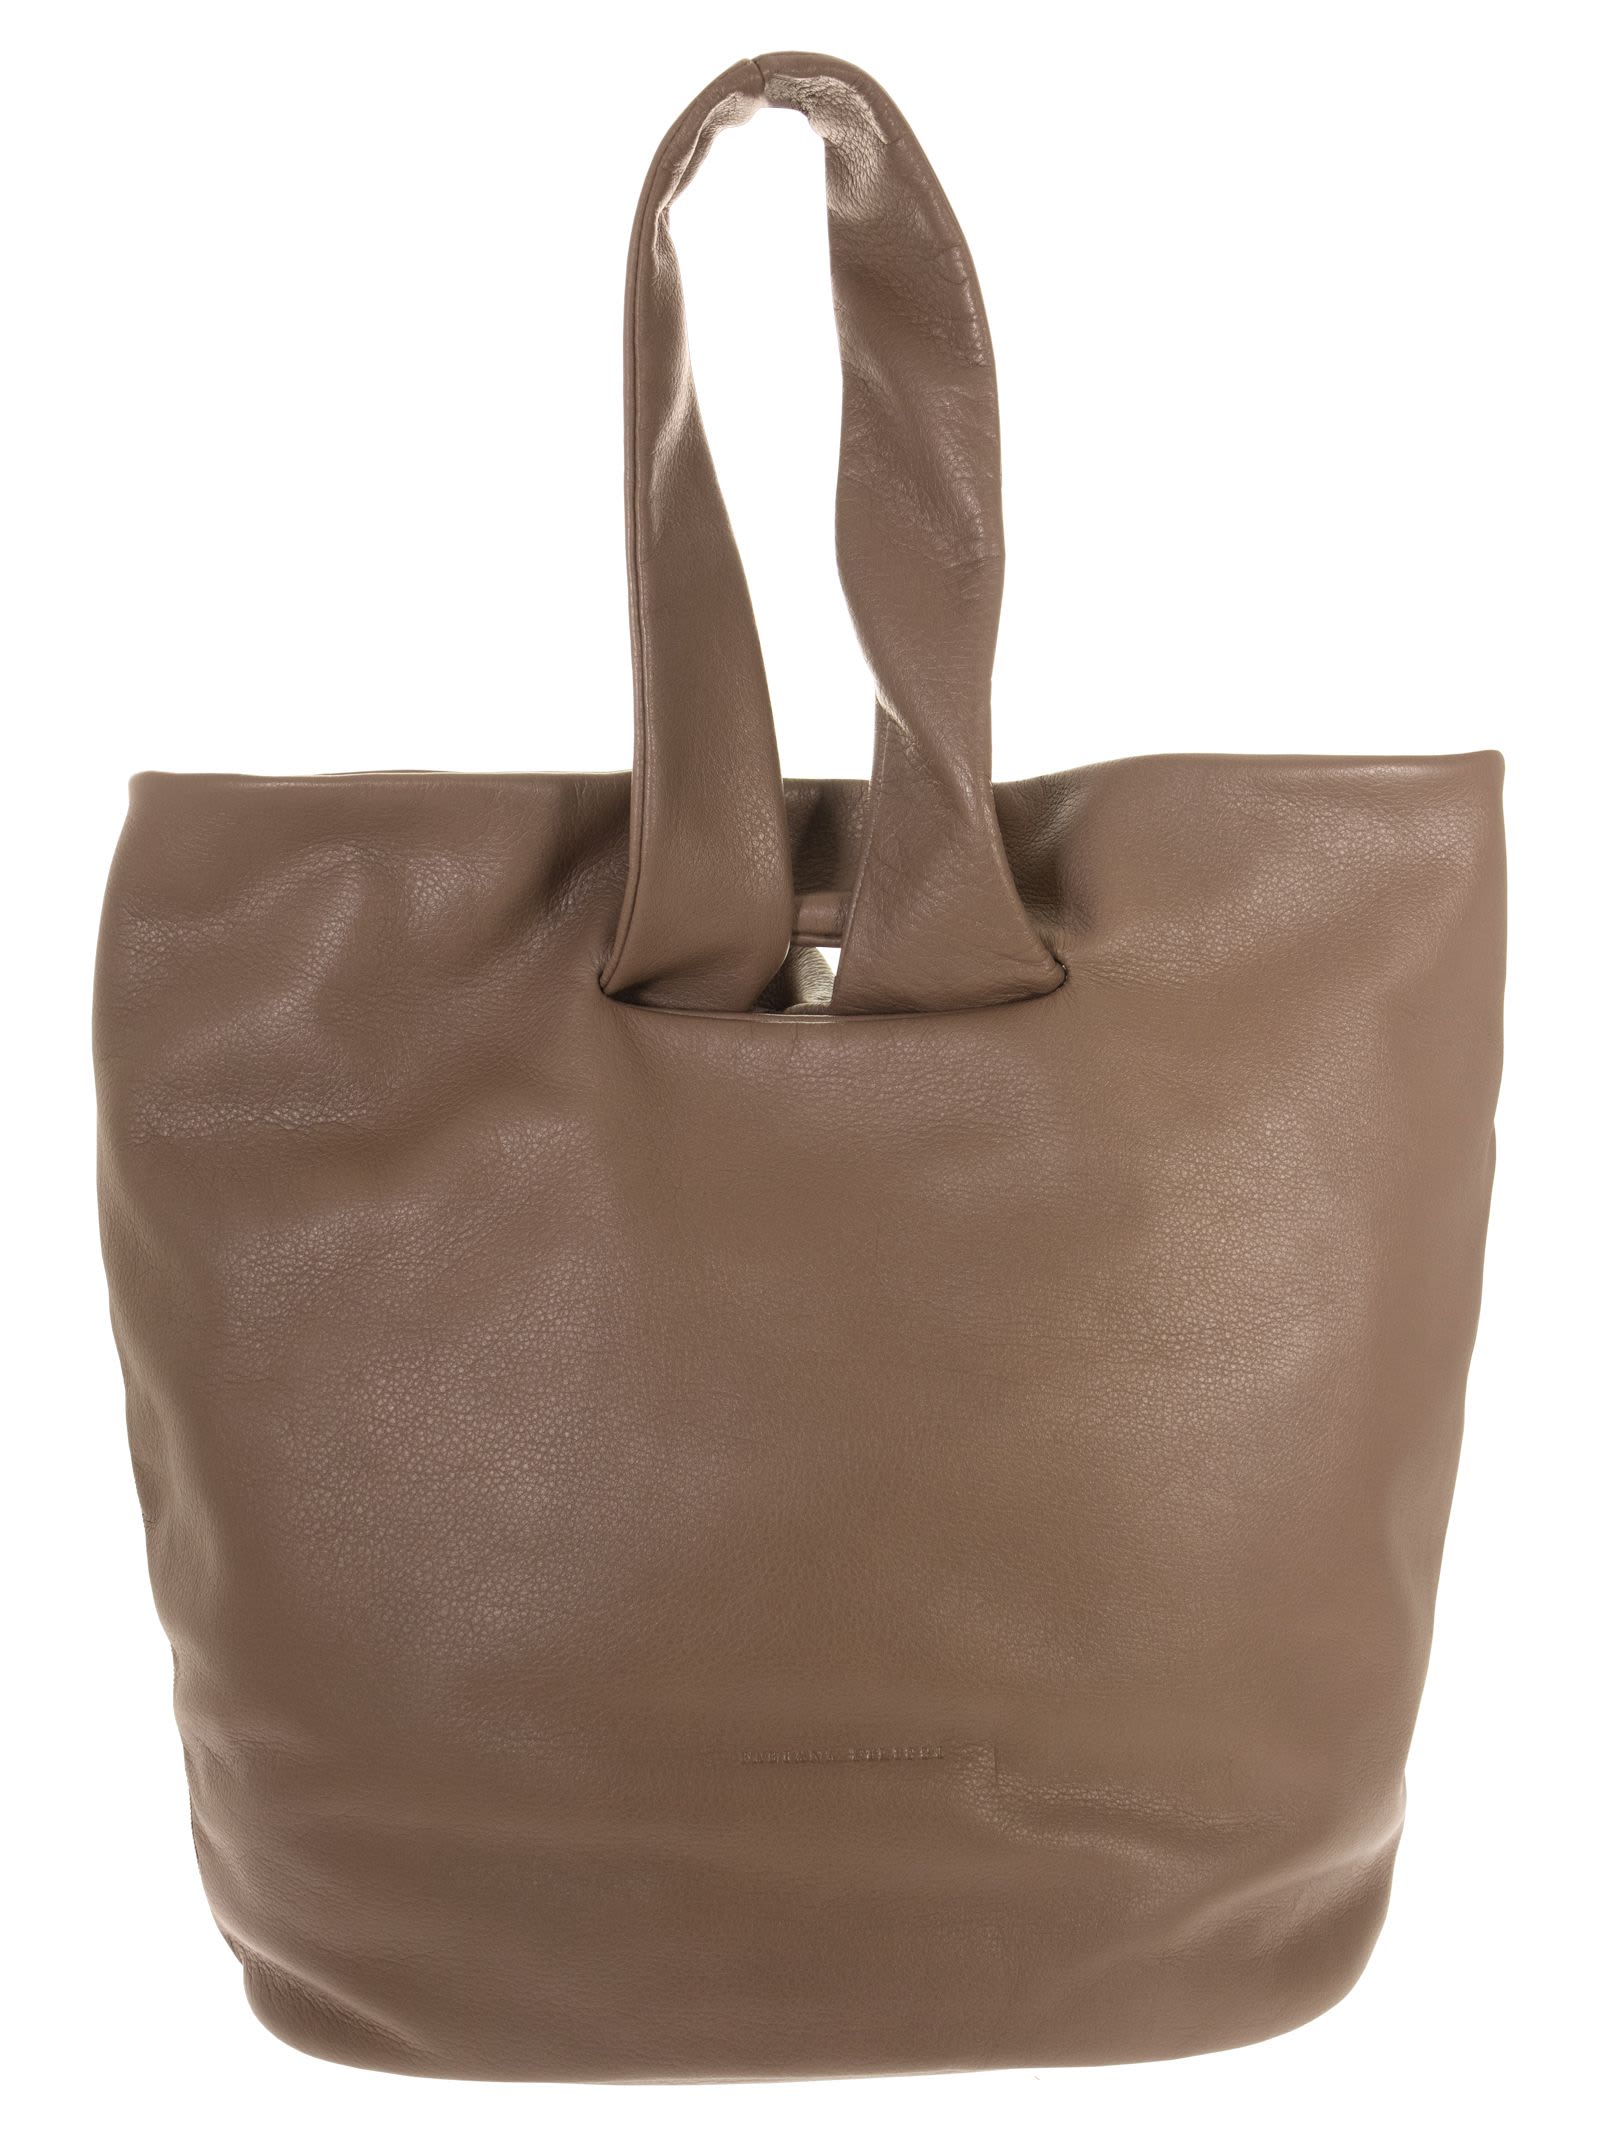 Fabiana Filippi Leather Shopping Bag